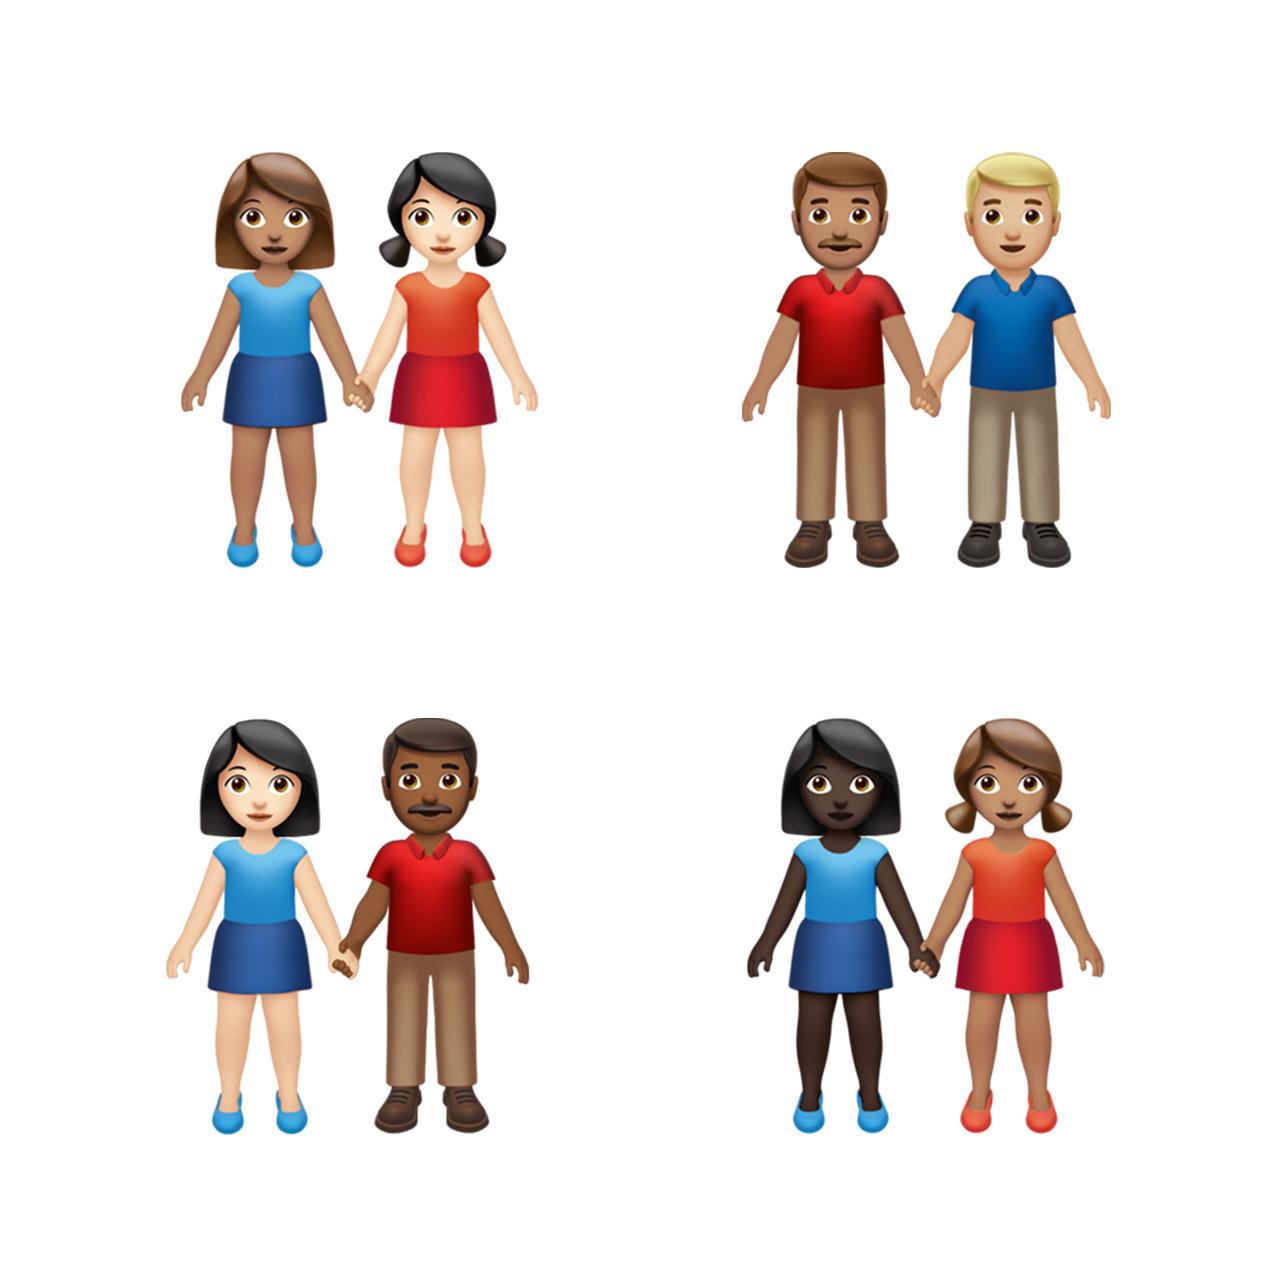 Selon Apple, les émojis actualisés "favorisent l'inclusion et la diversité". [Apple]